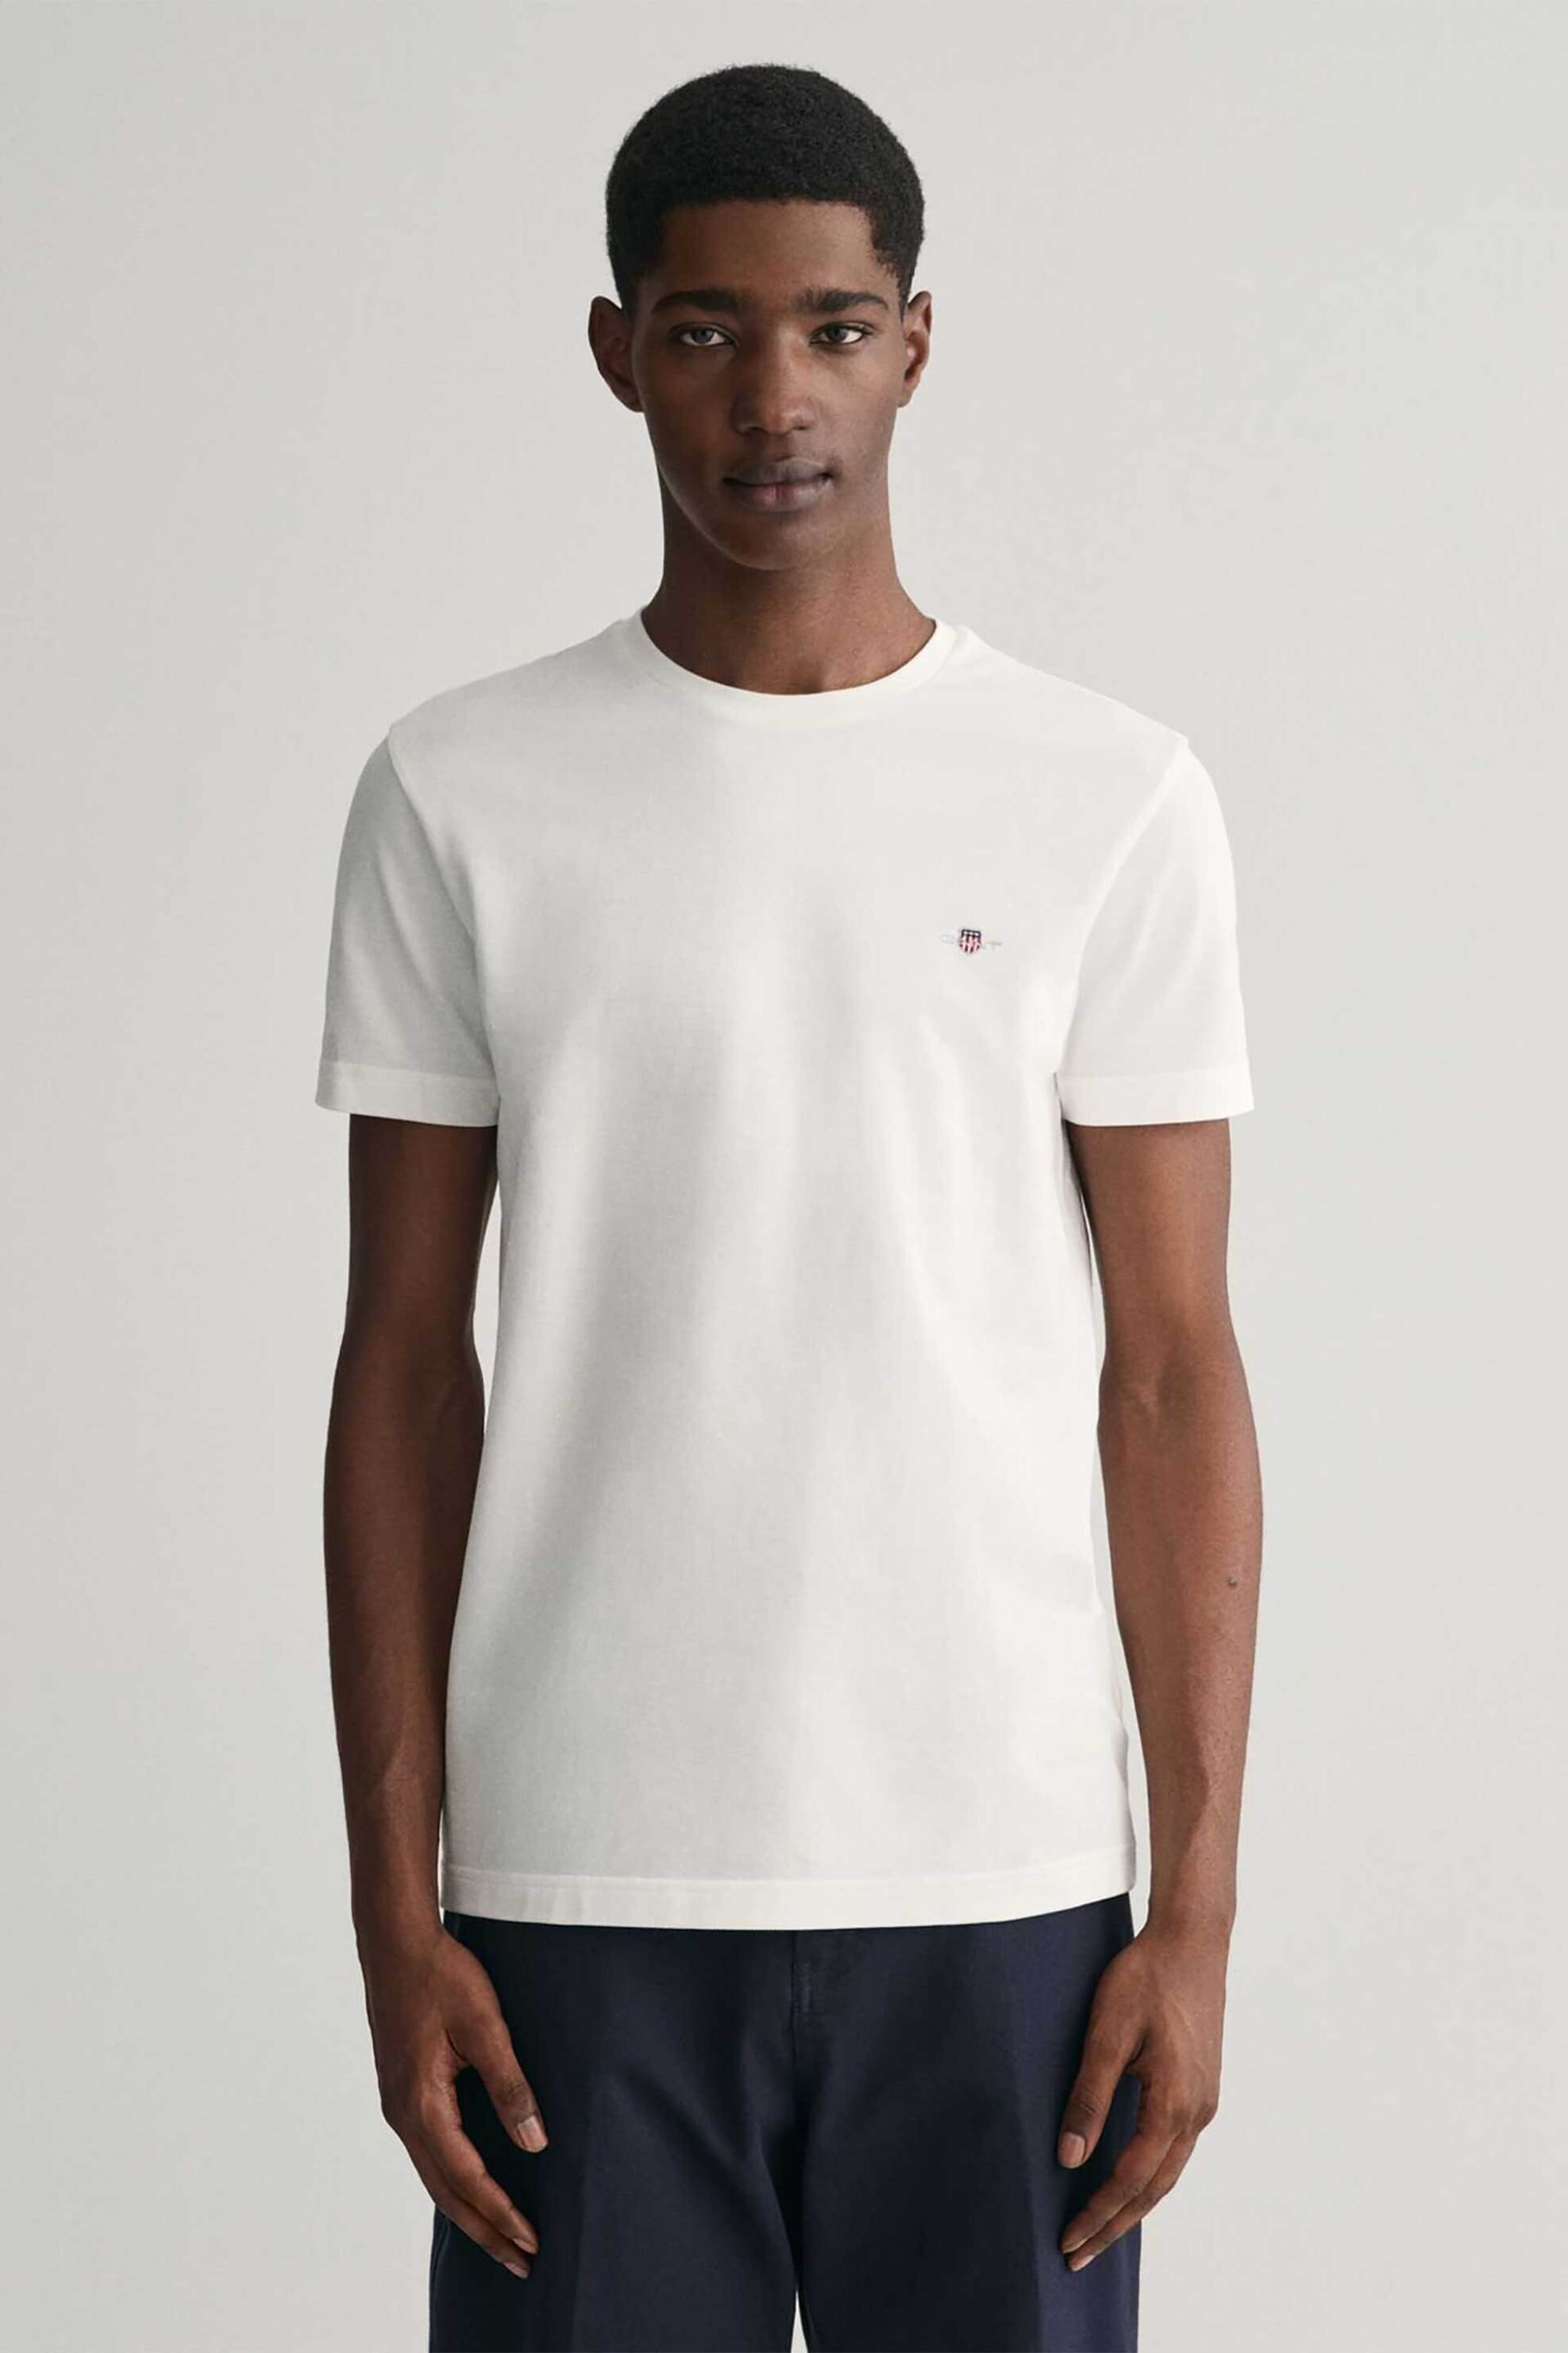 Ανδρική Μόδα > Ανδρικά Ρούχα > Ανδρικές Μπλούζες > Ανδρικά T-Shirts Gant ανδρικό T-shirt πικέ με κεντημένο λογότυπο Slim Fit - 2013033 Λευκό